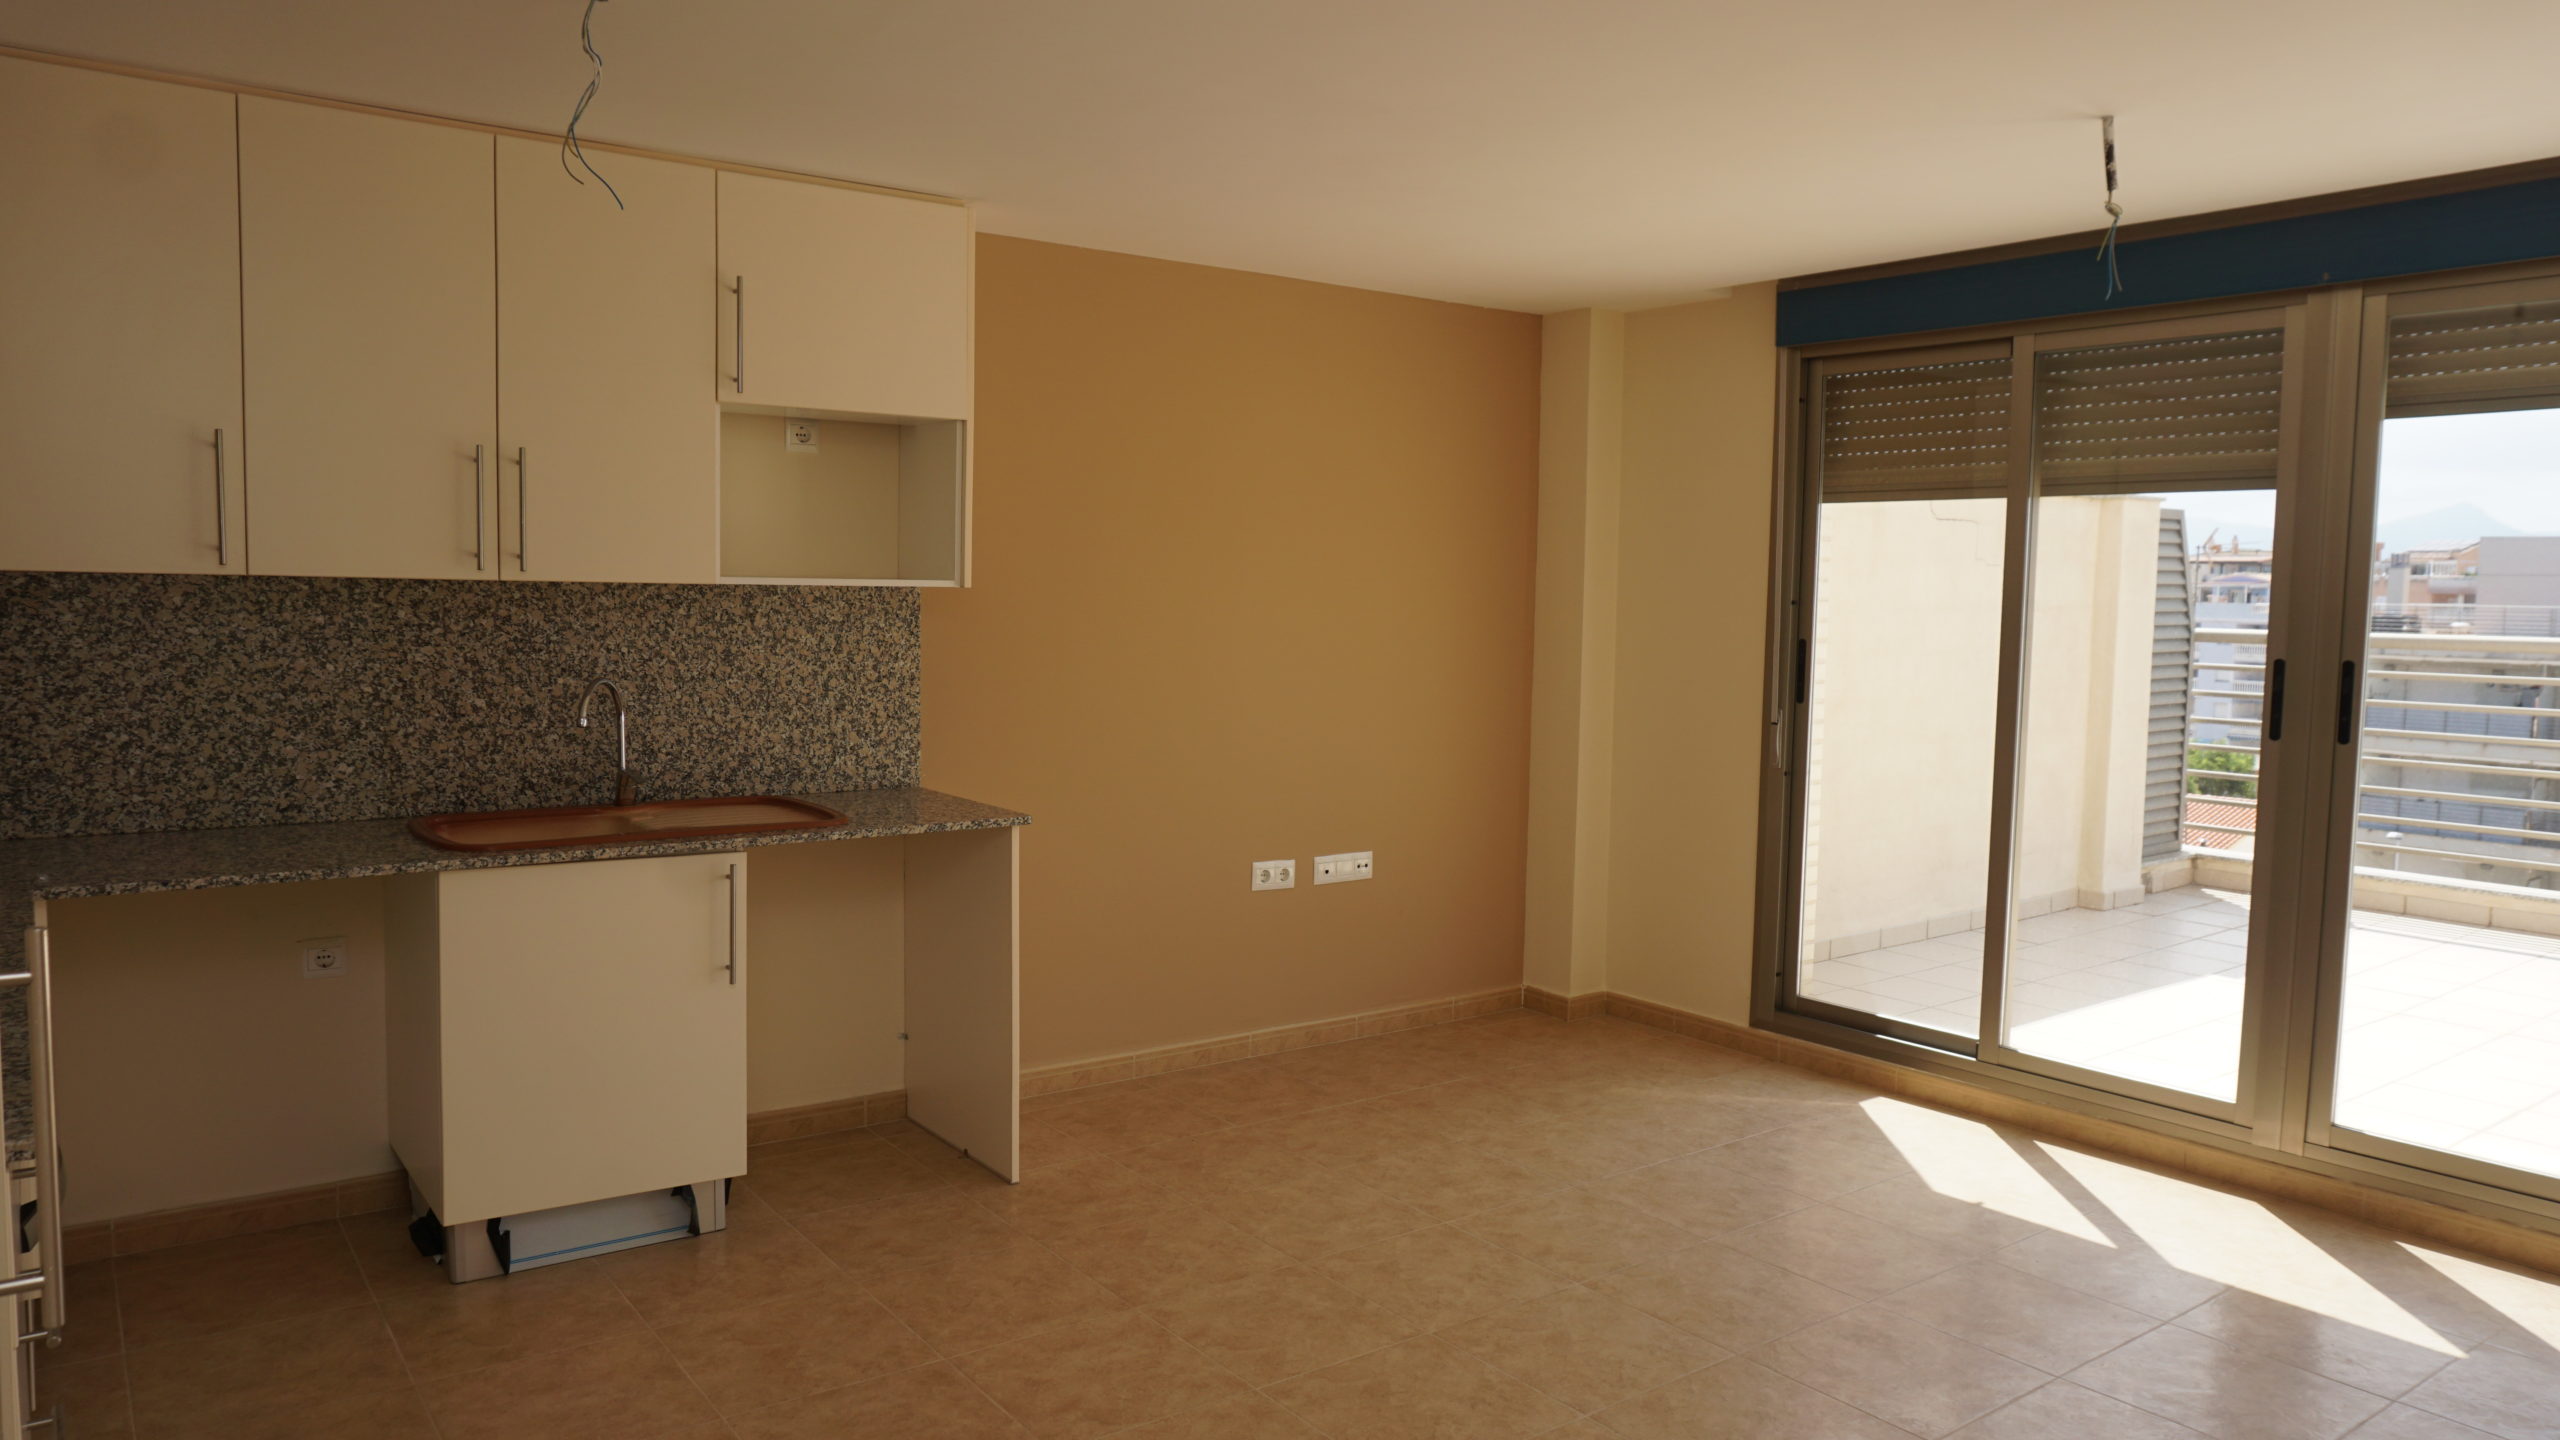 Promoción de viviendas nuevas en Moncofa (Castellón) Zona Playa